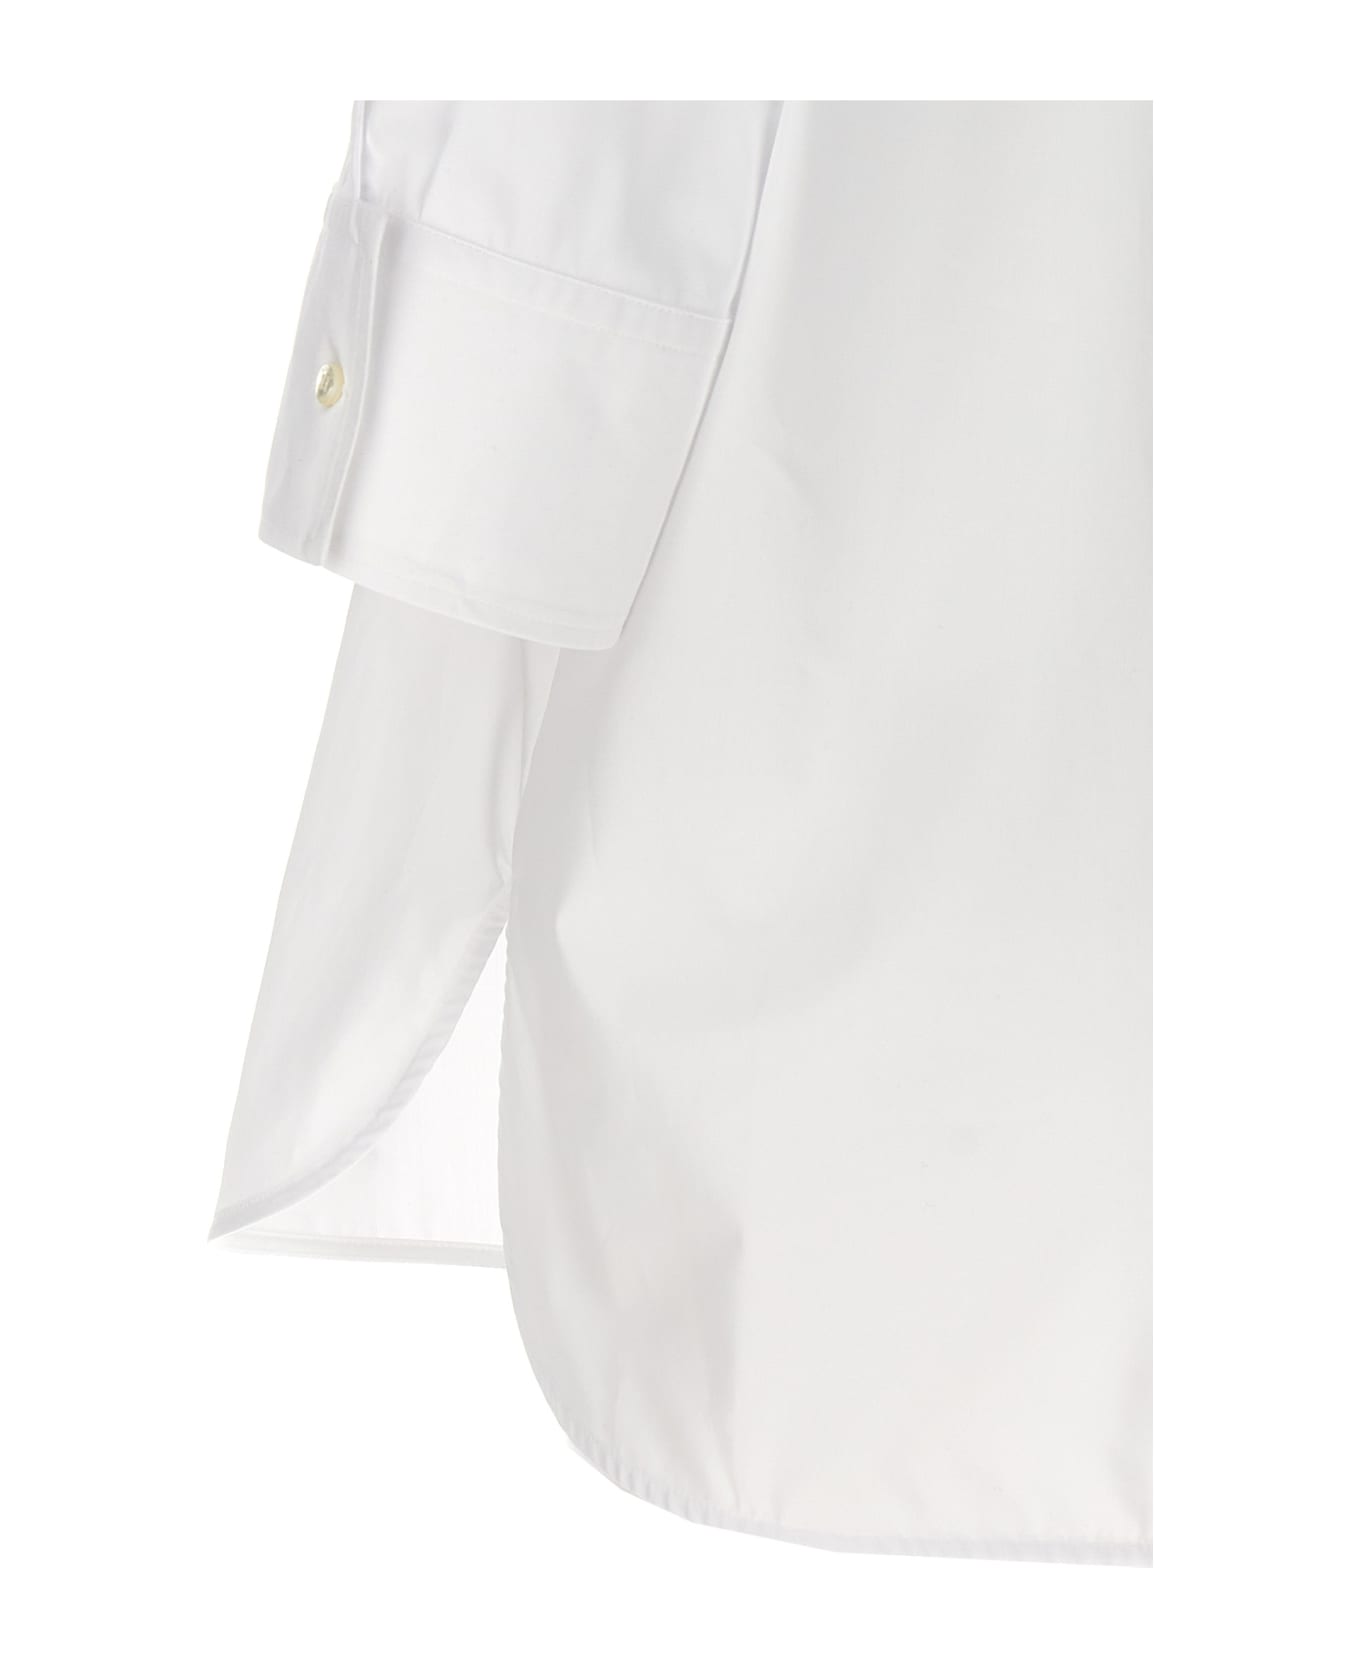 Alberto Biani Tuxedo Shirt - White ブラウス